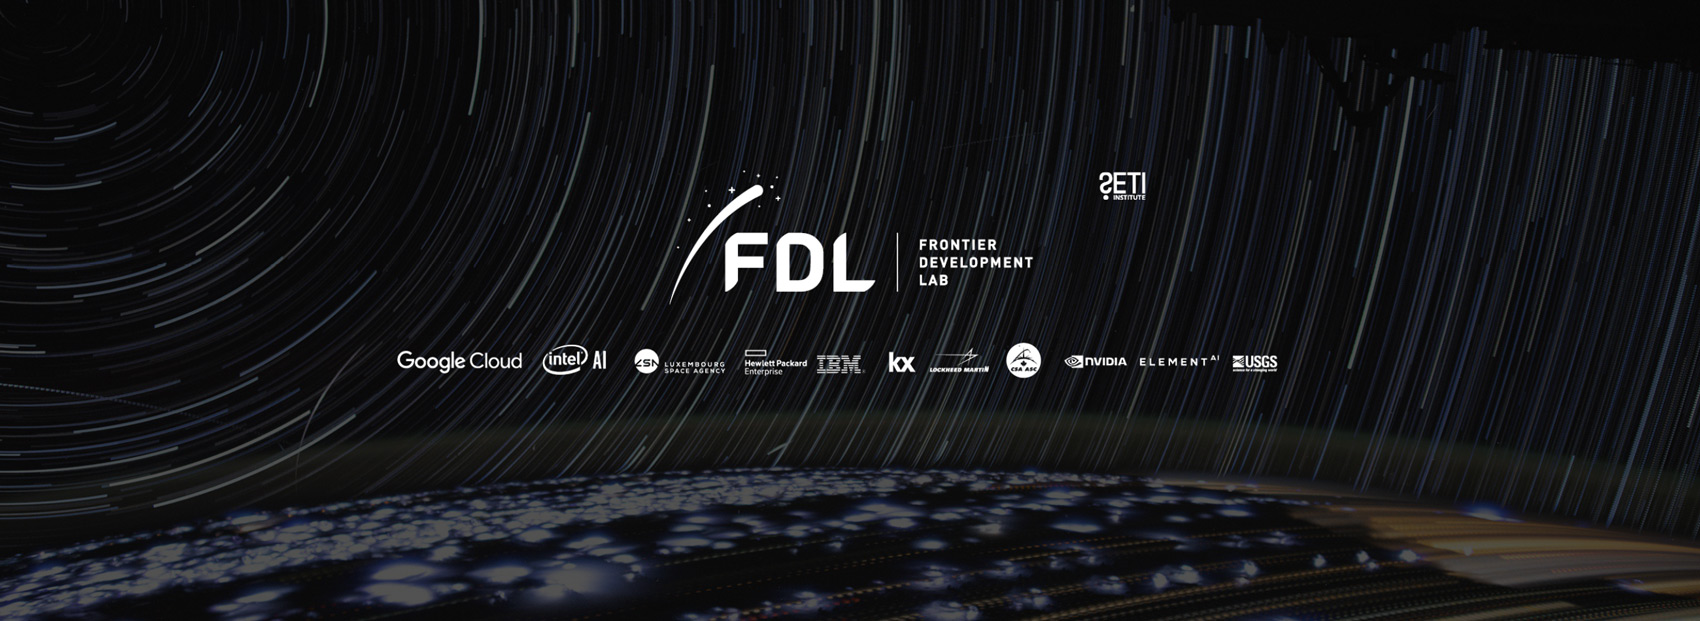 FDL Sponsor Banner